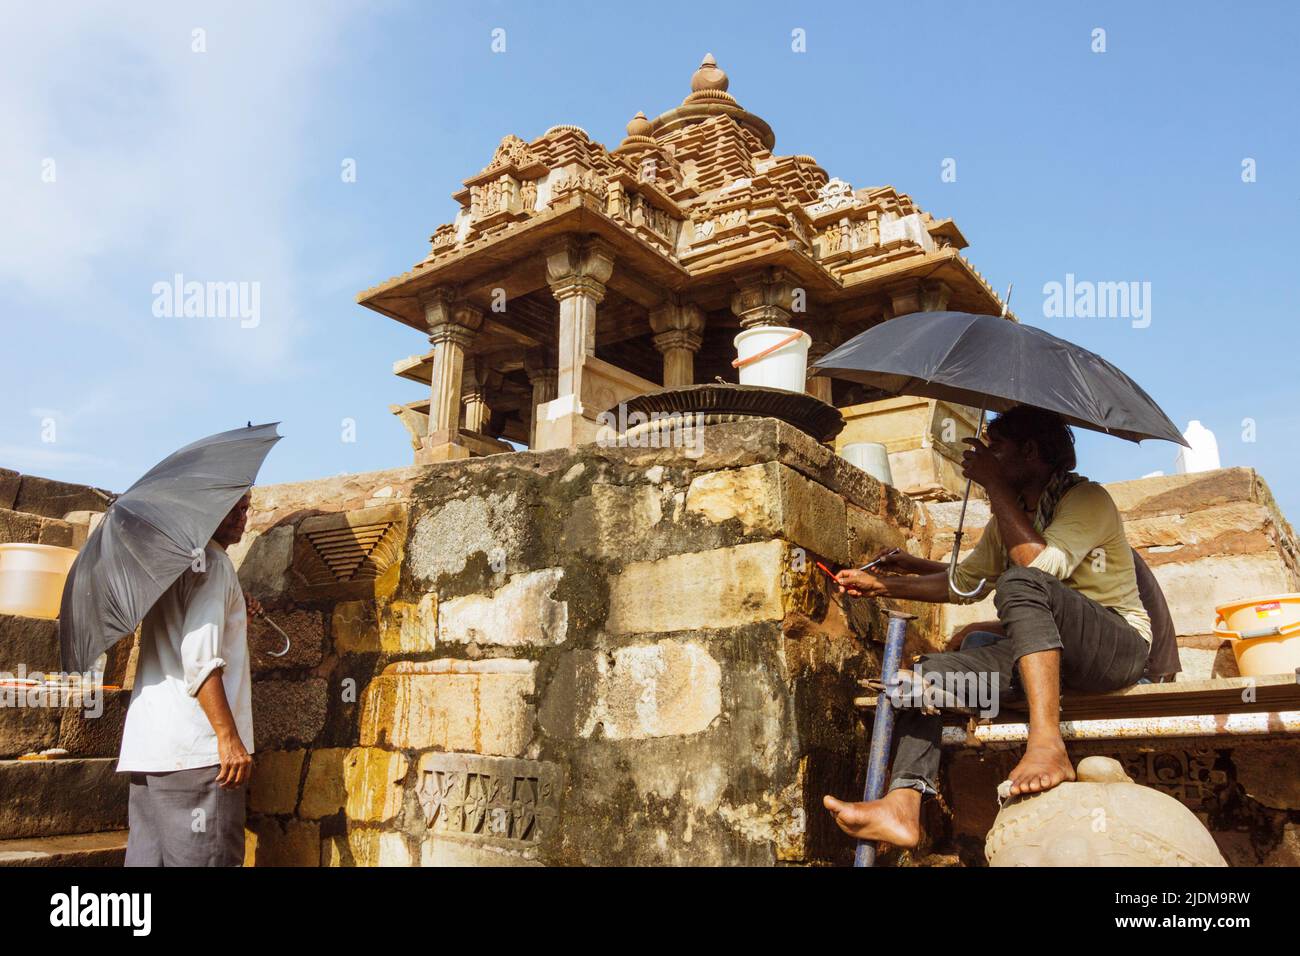 Khajuraho, Madhya Pradesh, Indien : zwei Männer halten Regenschirme arbeiten Wiederherstellung eines Lakshmi-Schrein Teil des UNESCO-Weltkulturerbes Khajuraho Gruppe von Stockfoto